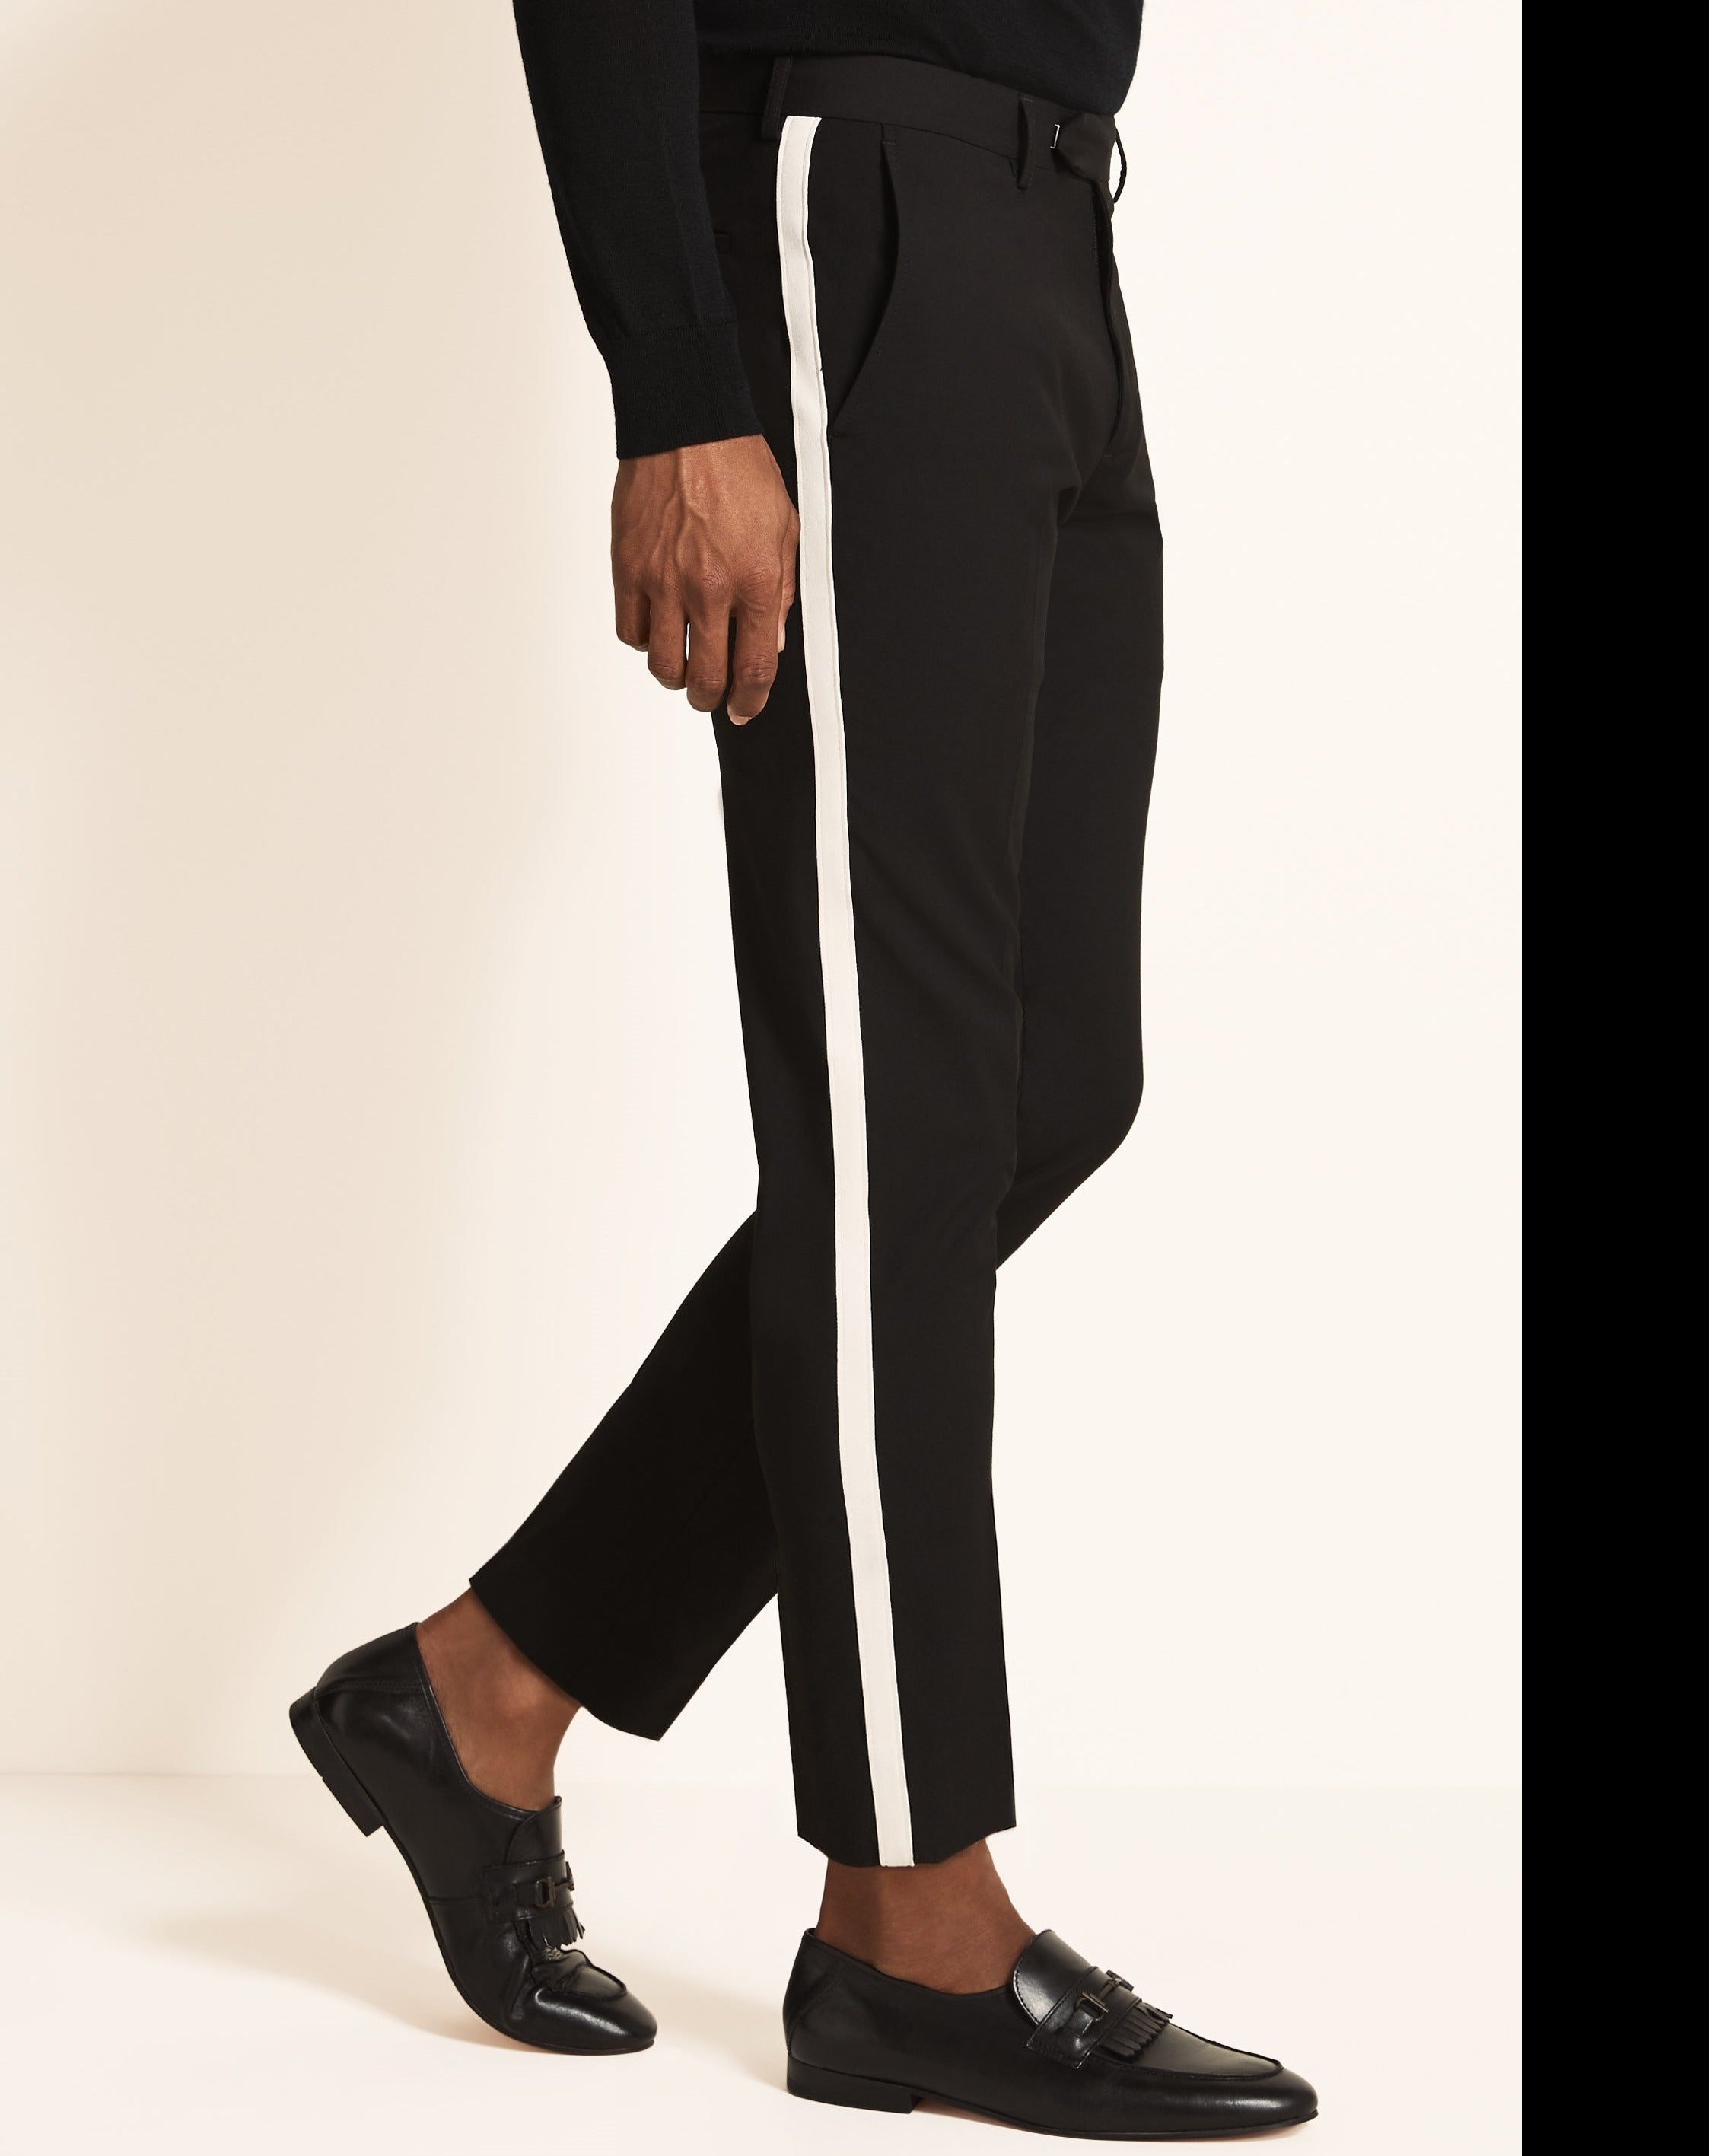 Buy Women's Black Stripe Trousers Online | Next UK